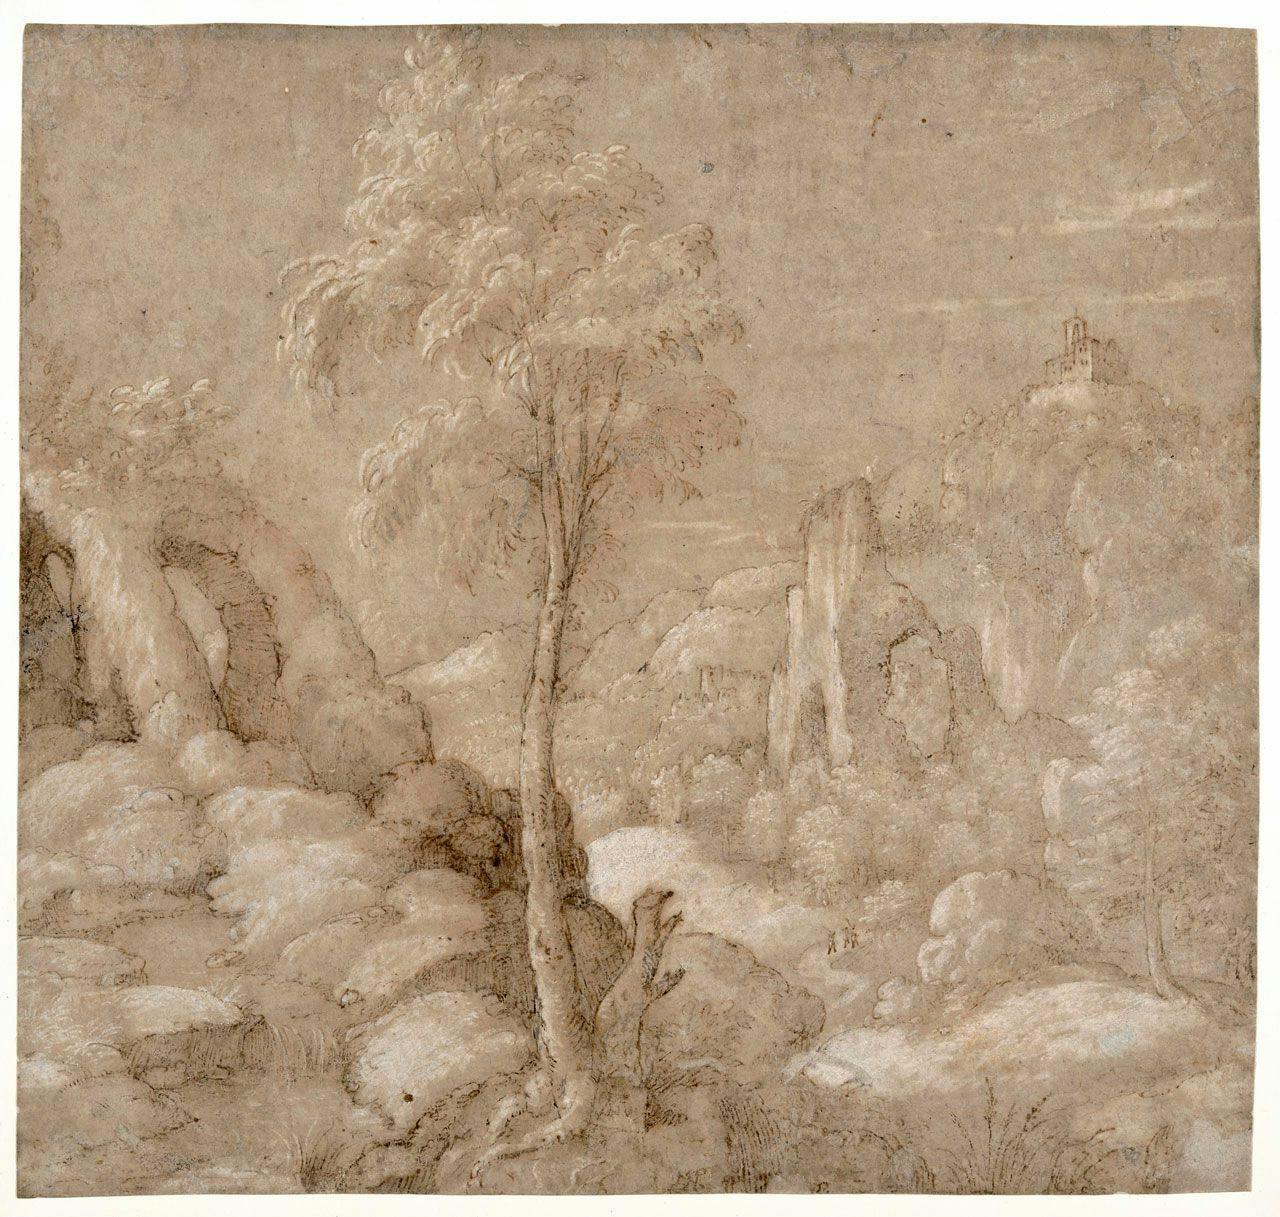 A Rocky Landscape with Trees
Gherardo  Cibo 
16th Century
2023.14.1